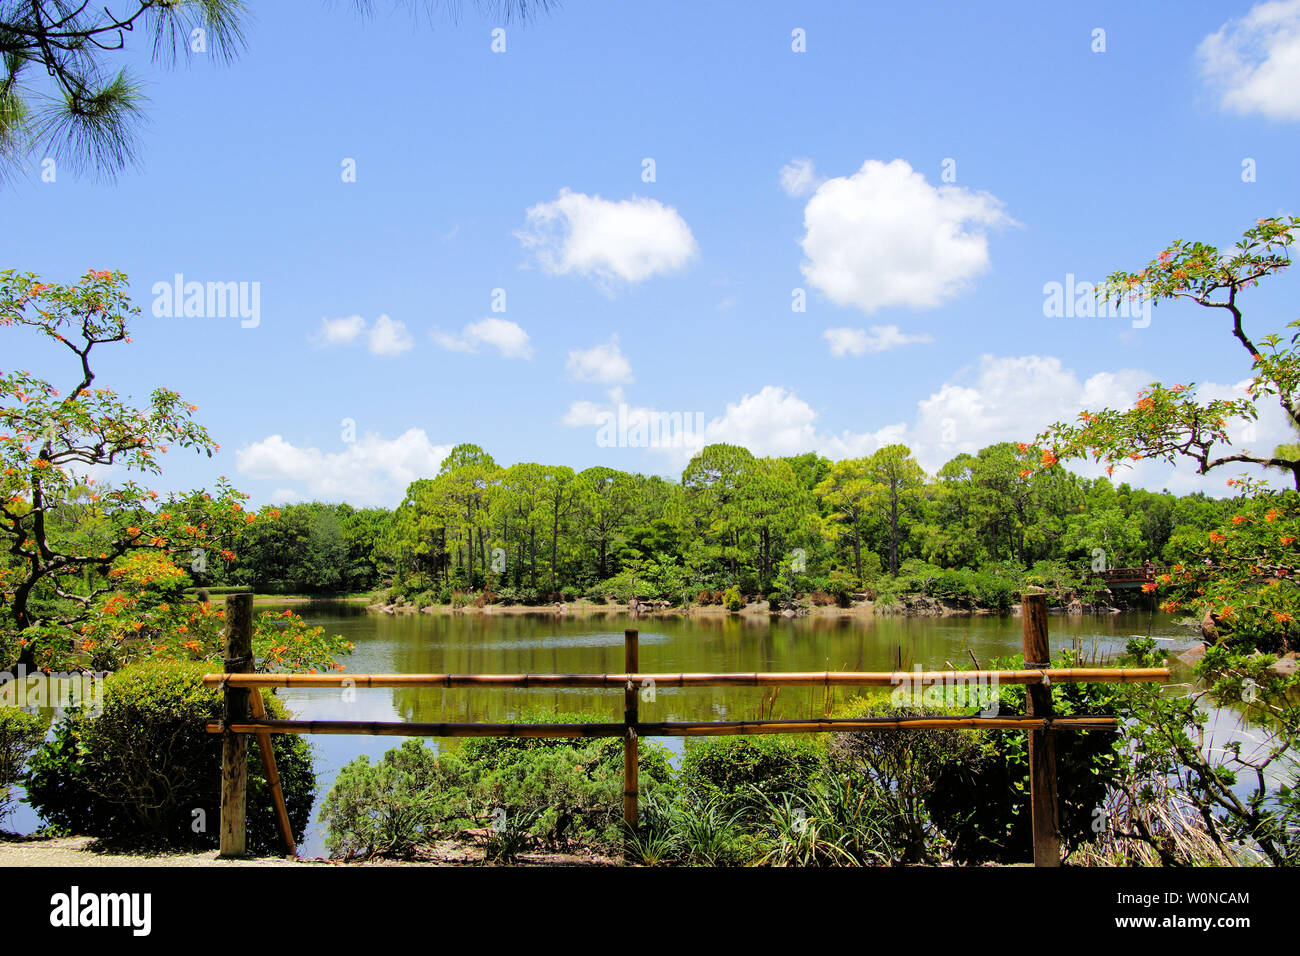 Delray Beach, Florida, Morikami japanisch Botanischer Garten, schöne Brücke, Wasserfall und Gehweg entlang des Sees inmitten einer üppigen Laub Hintergrund Stockfoto